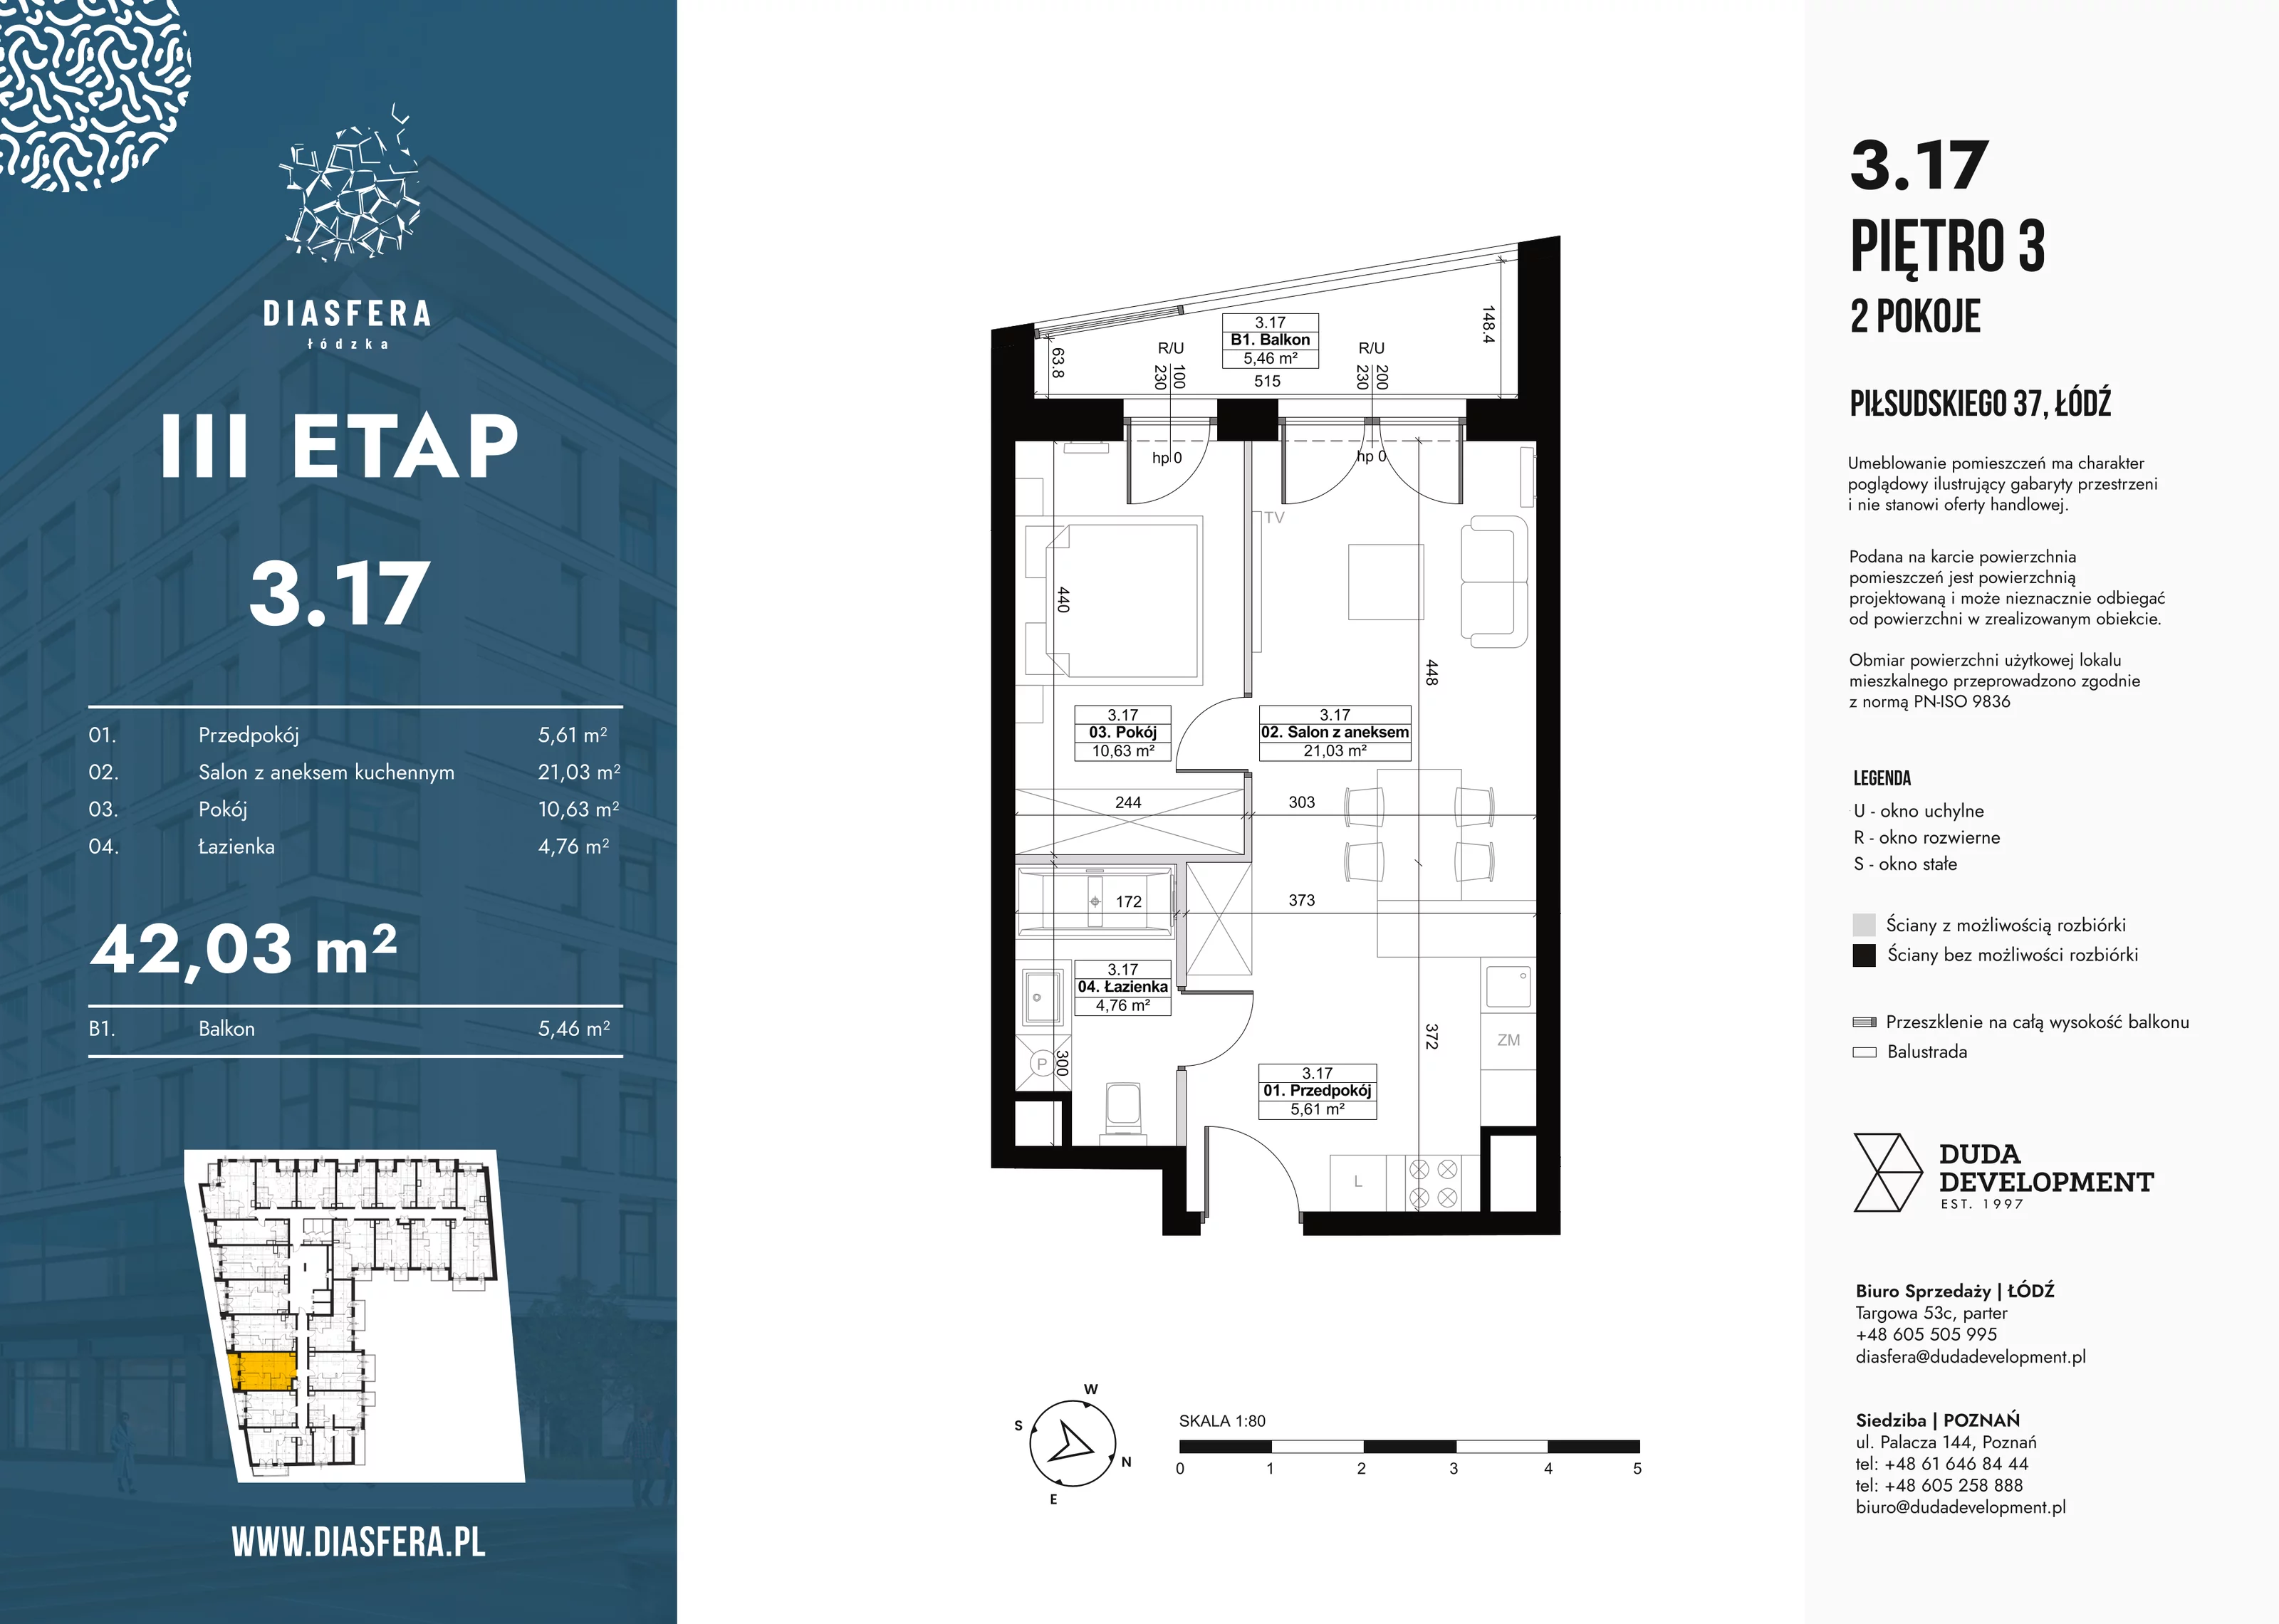 Mieszkanie 42,03 m², piętro 3, oferta nr 3_17, Diasfera III, Łódź, Śródmieście, al. Piłsudskiego 37